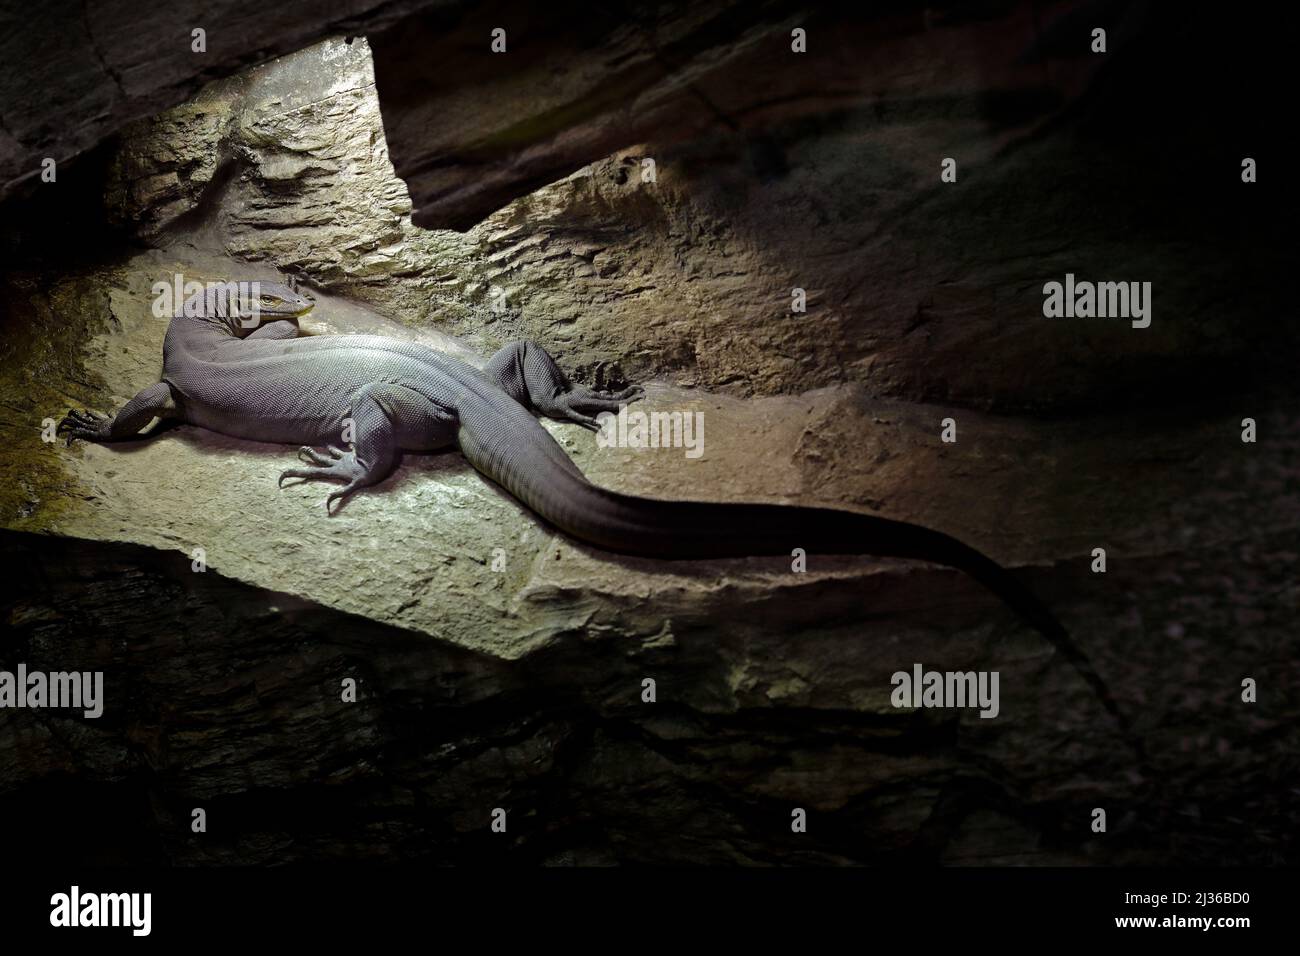 Mertens' or Mertens's water monitor, Varanus mertensi, Australia. Lizard in dark cave habitat. Monitor near the river. Wildlife scene from nature. Liz Stock Photo